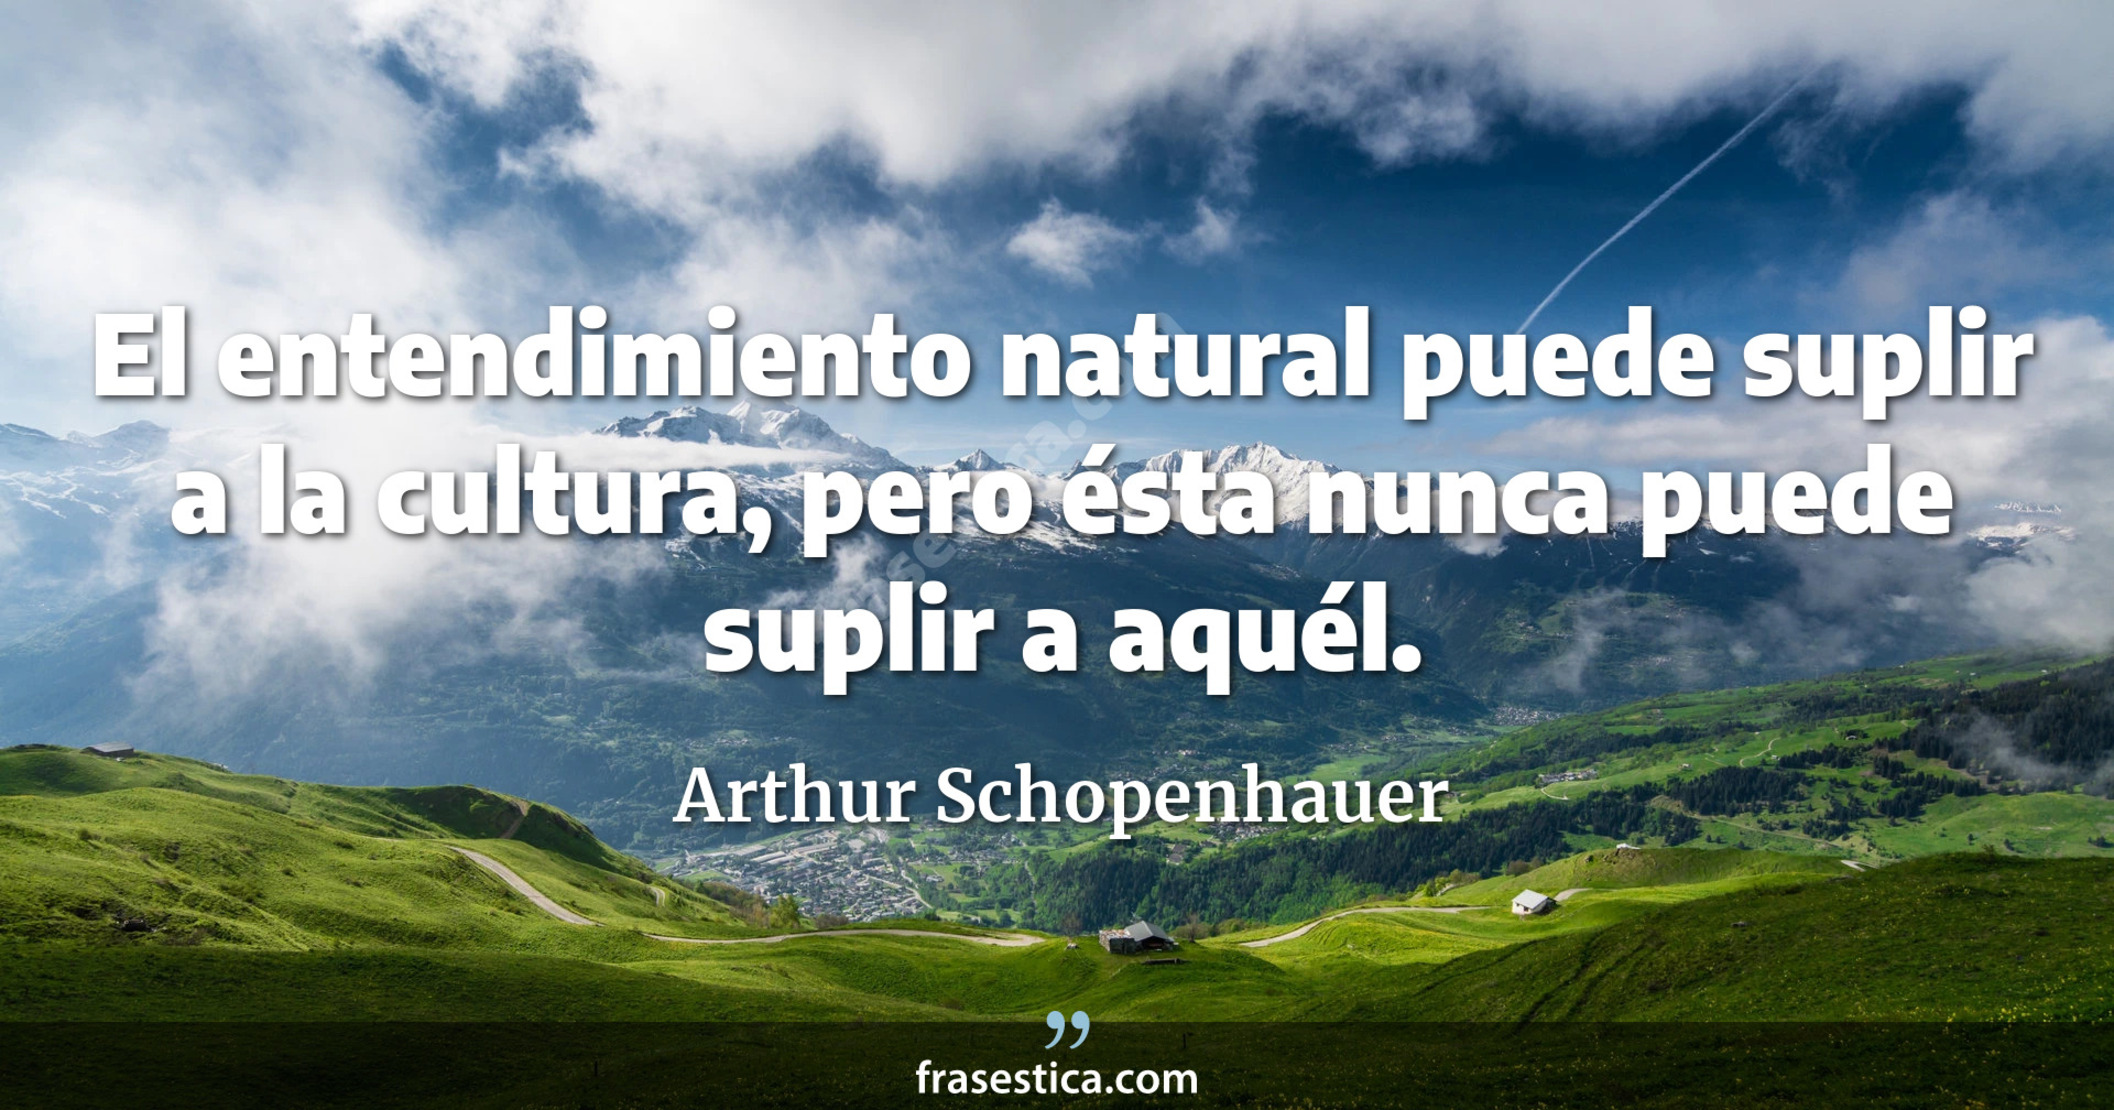 El entendimiento natural puede suplir a la cultura, pero ésta nunca puede suplir a aquél. - Arthur Schopenhauer